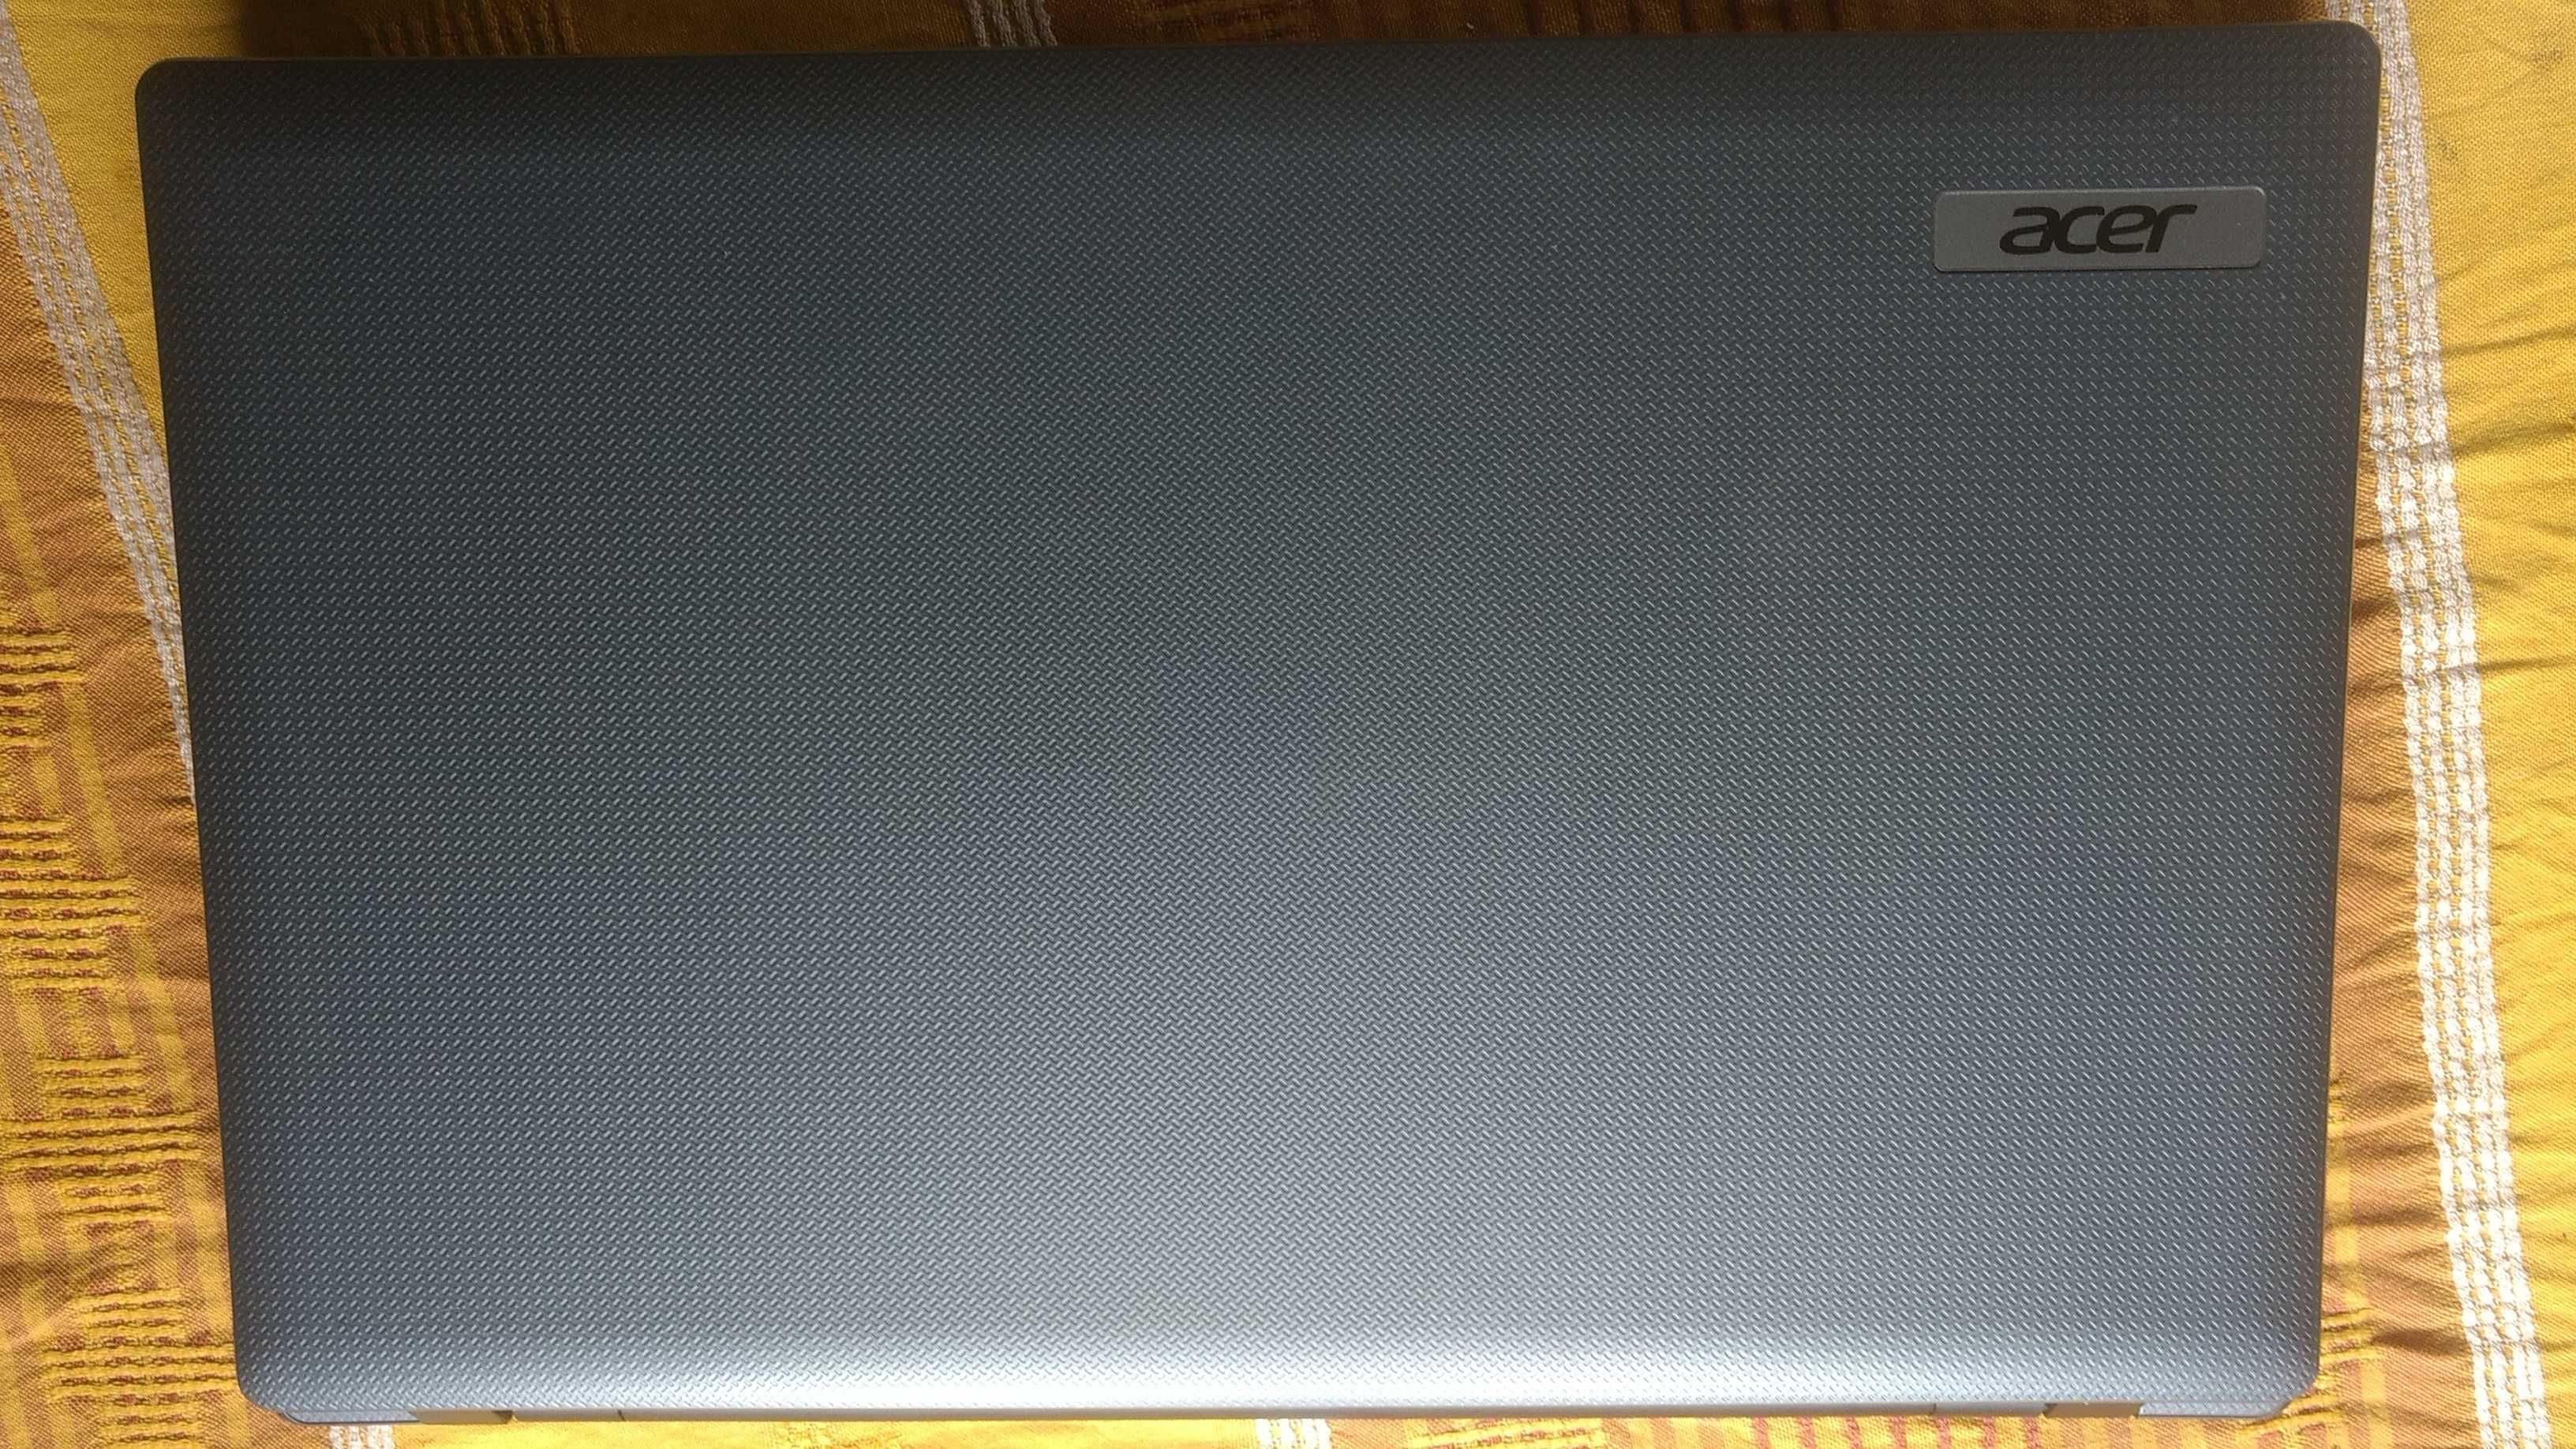 Ноутбук Acer Aspire 7250 aab70 17,3" amd e450 2 gb по запчастям